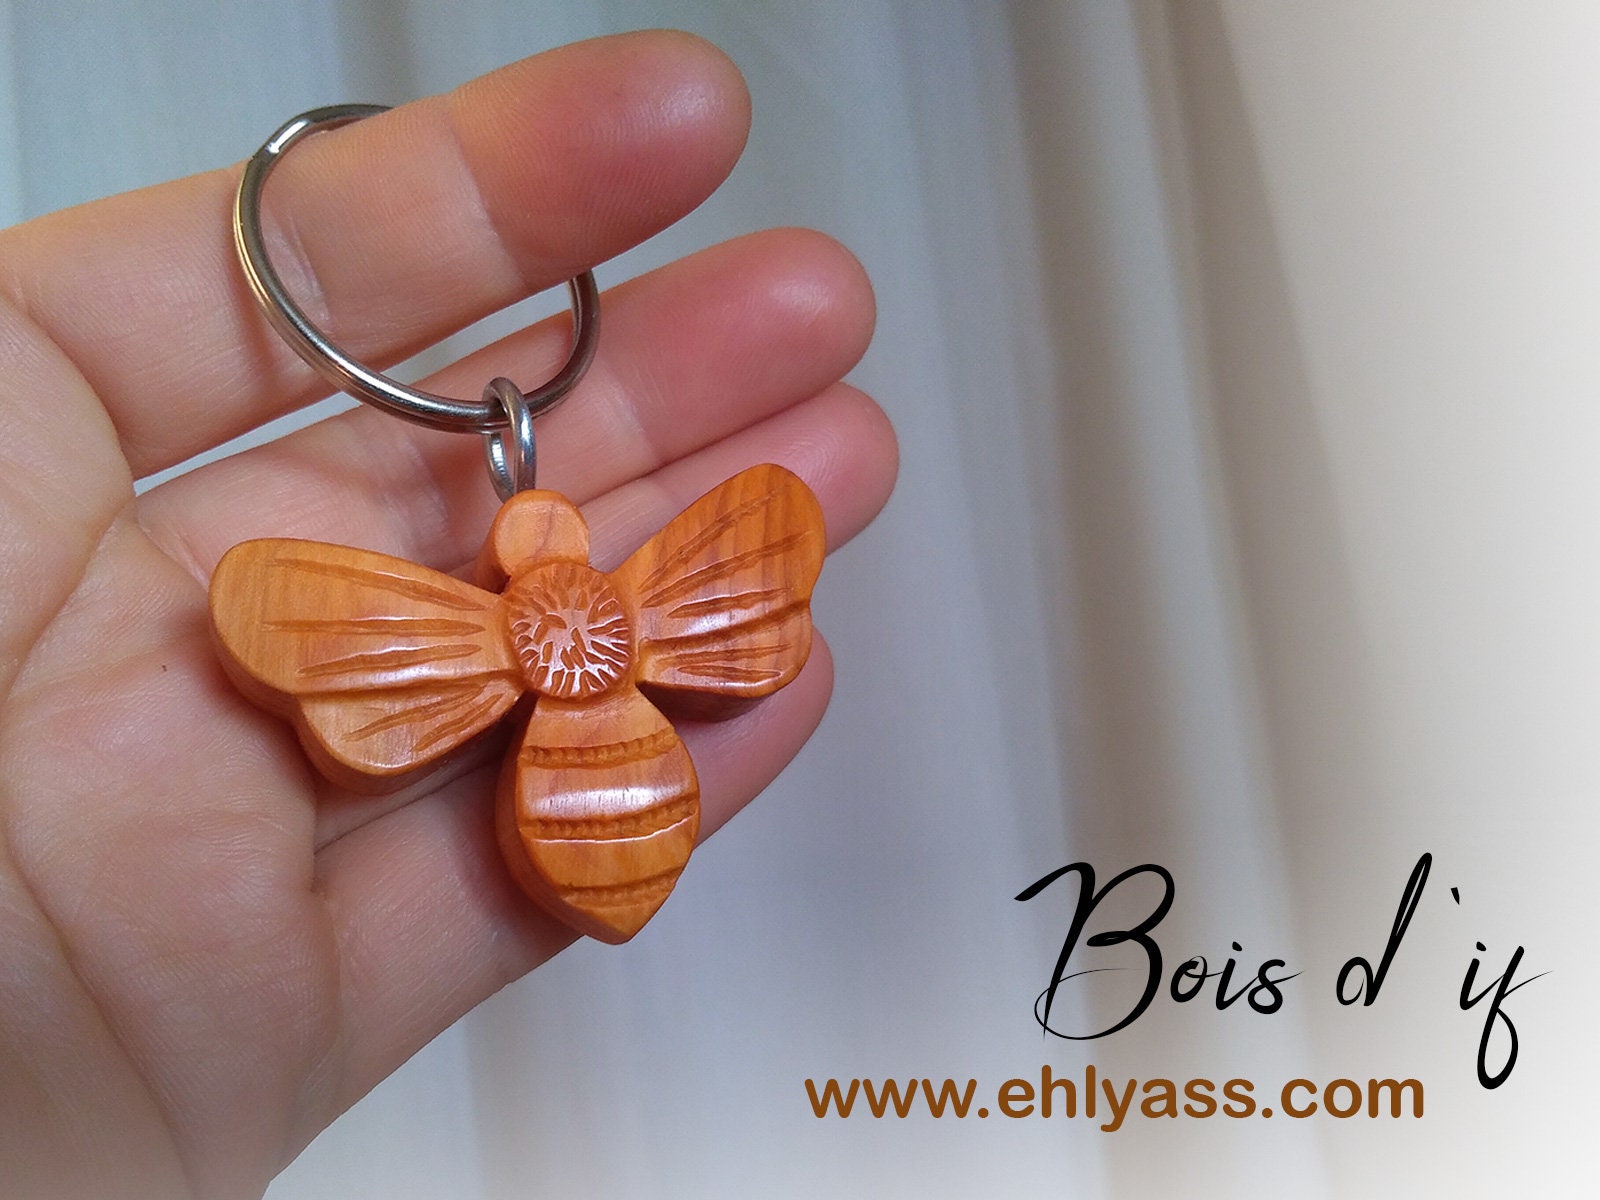 1 Set 2 pcs perle abeille porte-clés voiture clé femme sac pendentifs  (couleur aléatoire)